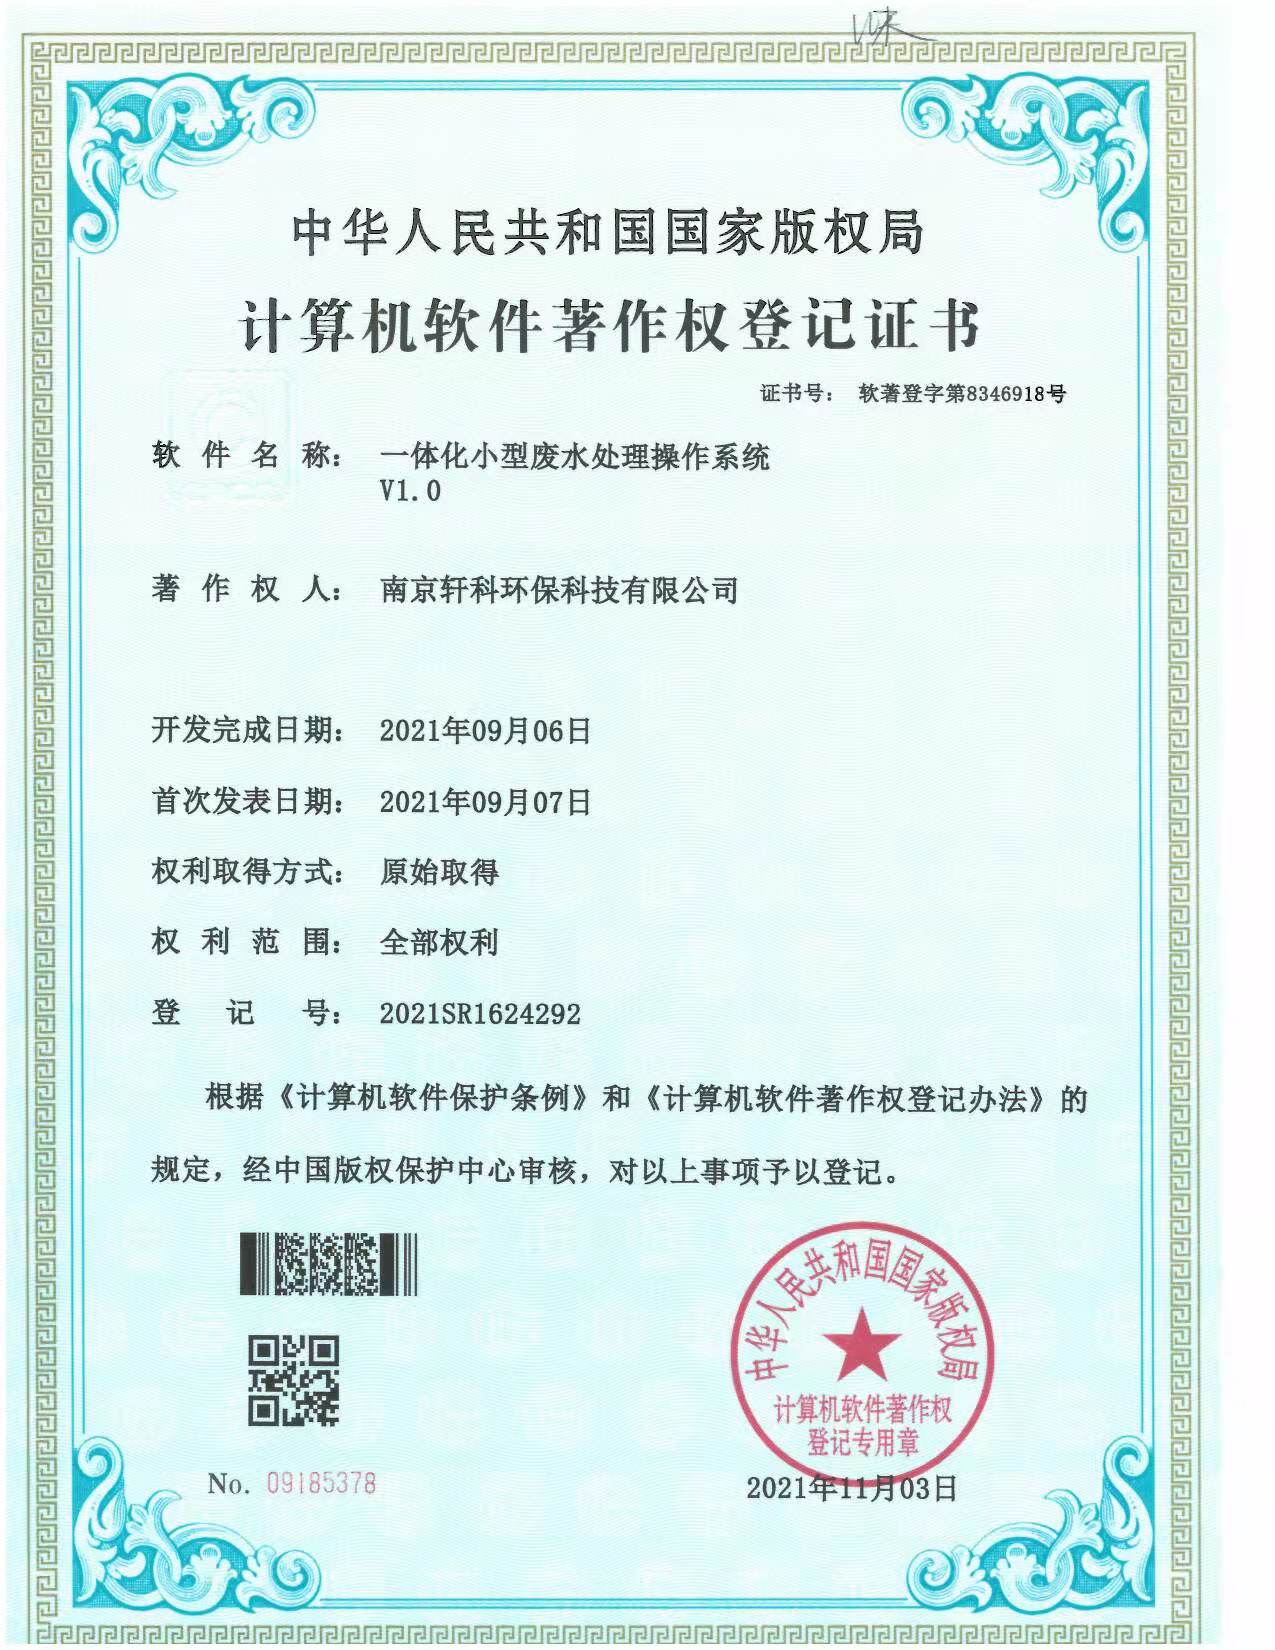 深圳小型一体化废水处理系统软件著作权证书